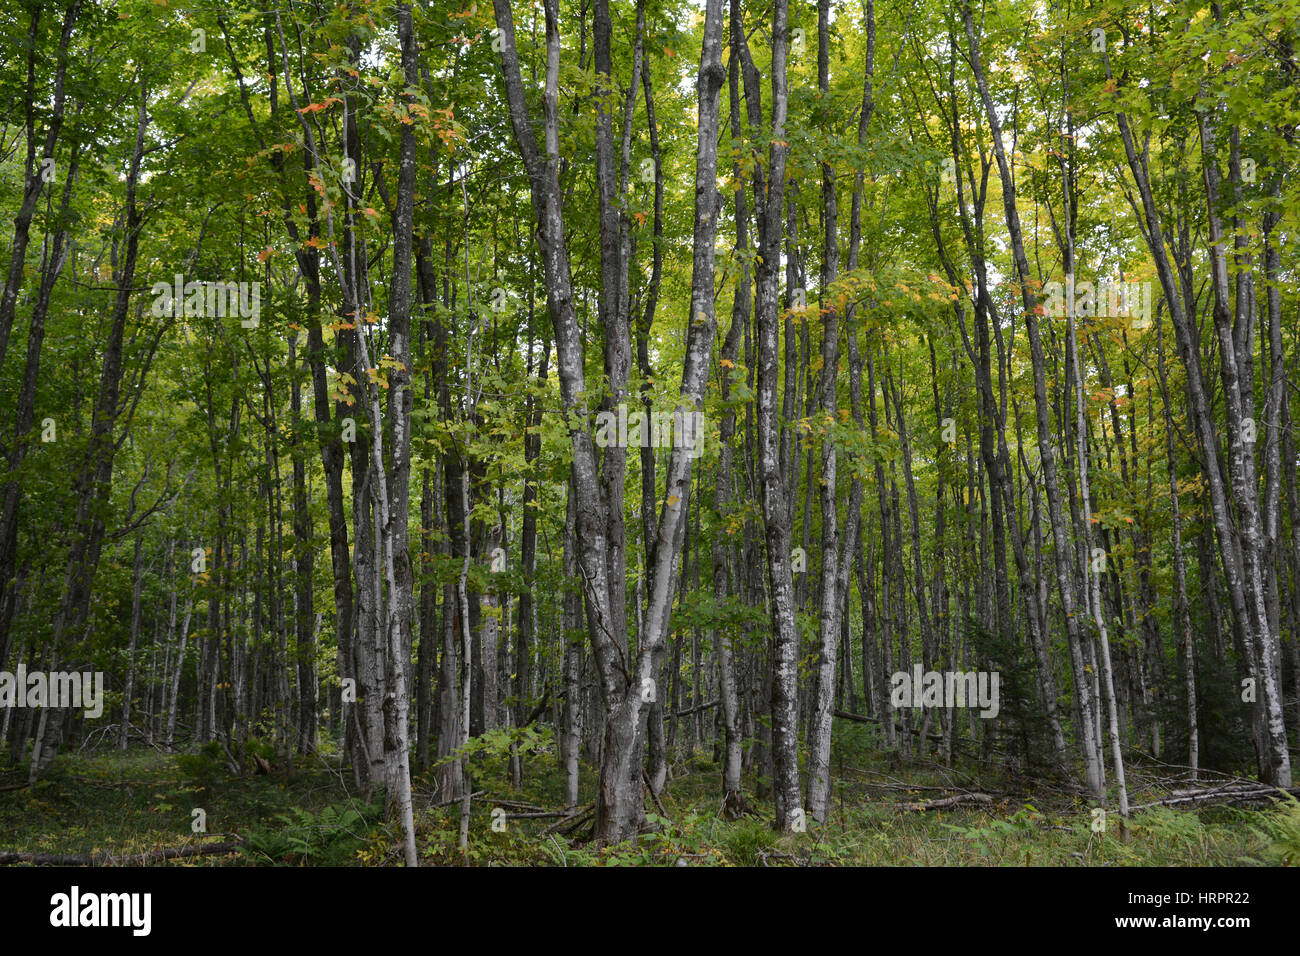 Ein horizontales Bild von einem Wald voller Bäume mit Blättern, die gerade erst anfangen, die Farbe von Grün zu gelb und rot zu ändern. Stockfoto